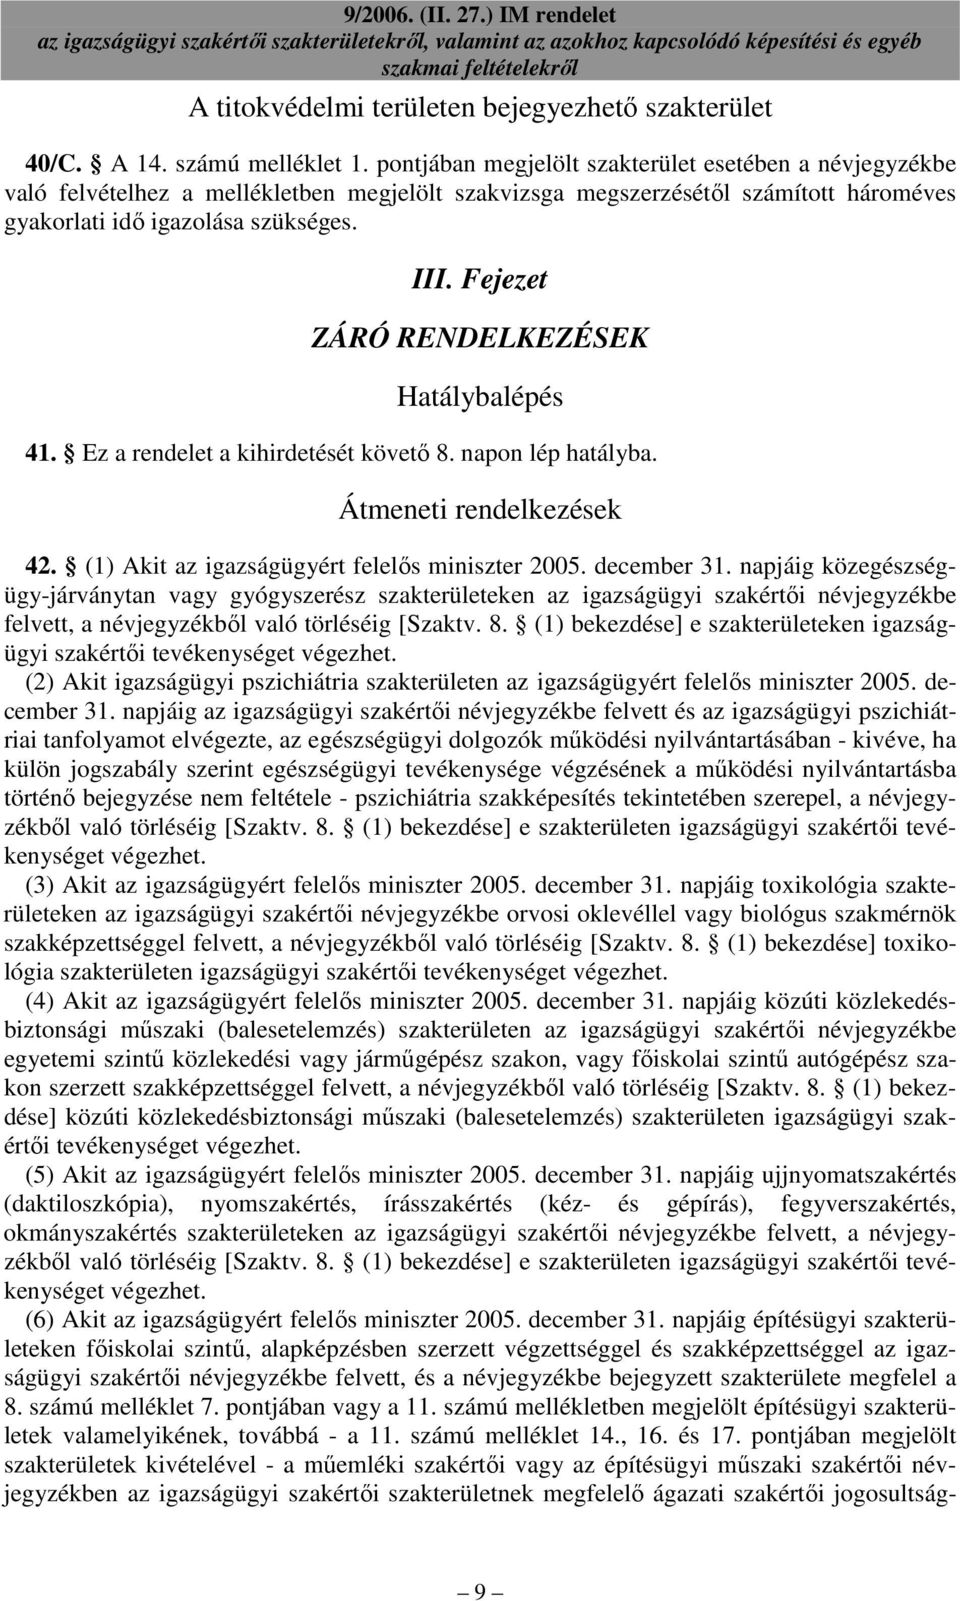 Fejezet ZÁRÓ RENDELKEZÉSEK Hatálybalépés 41. Ez a rendelet a kihirdetését követı 8. napon lép hatályba. Átmeneti rendelkezések 42. (1) Akit az igazságügyért felelıs miniszter 2005. december 31.